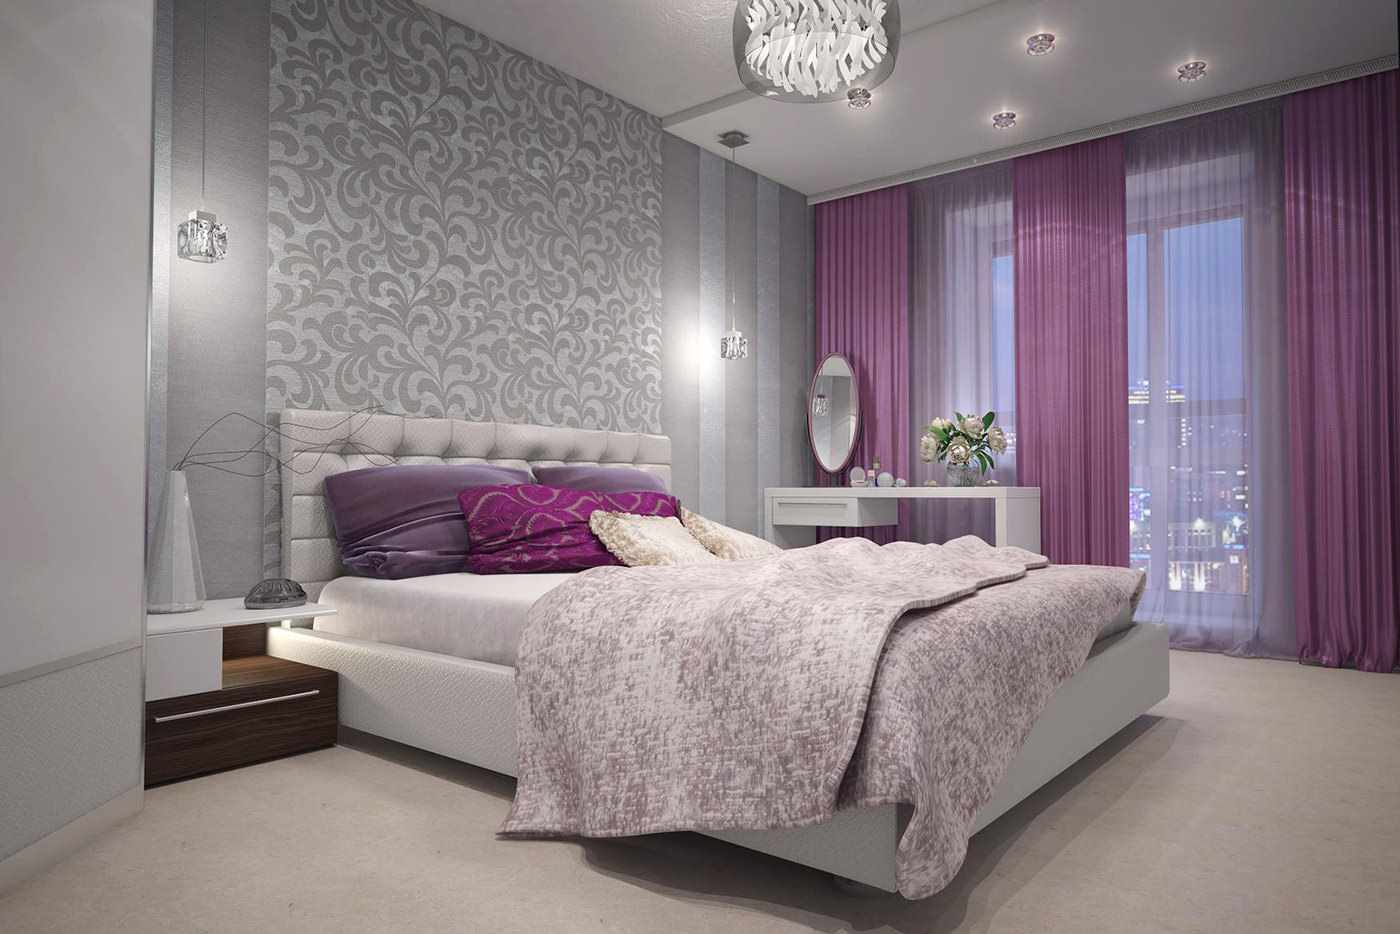 Un esempio di una leggera decorazione del design a parete in una camera da letto